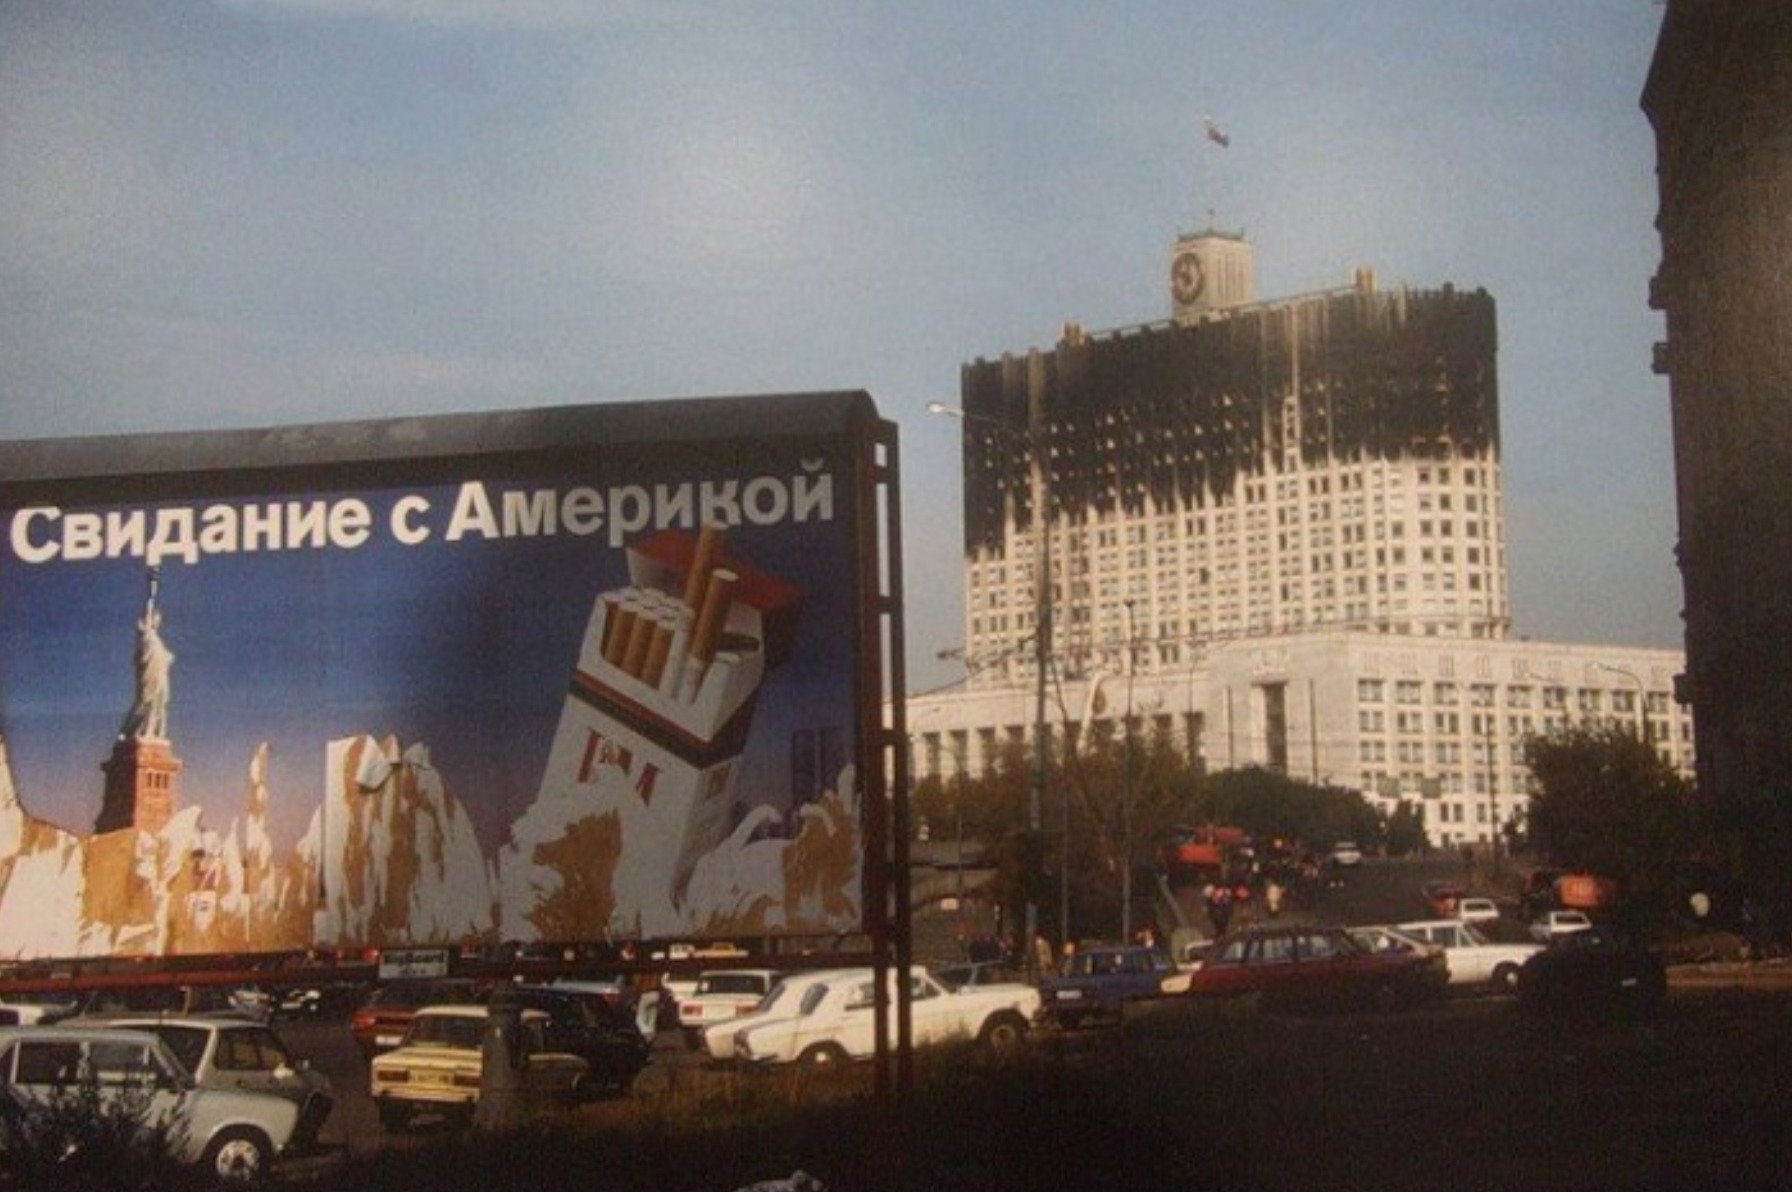 Bigpicture.ru 22 архивных фотографии, которые возможно вас удивятРекламный щит на фоне Белого дома из 1993 года, Москва